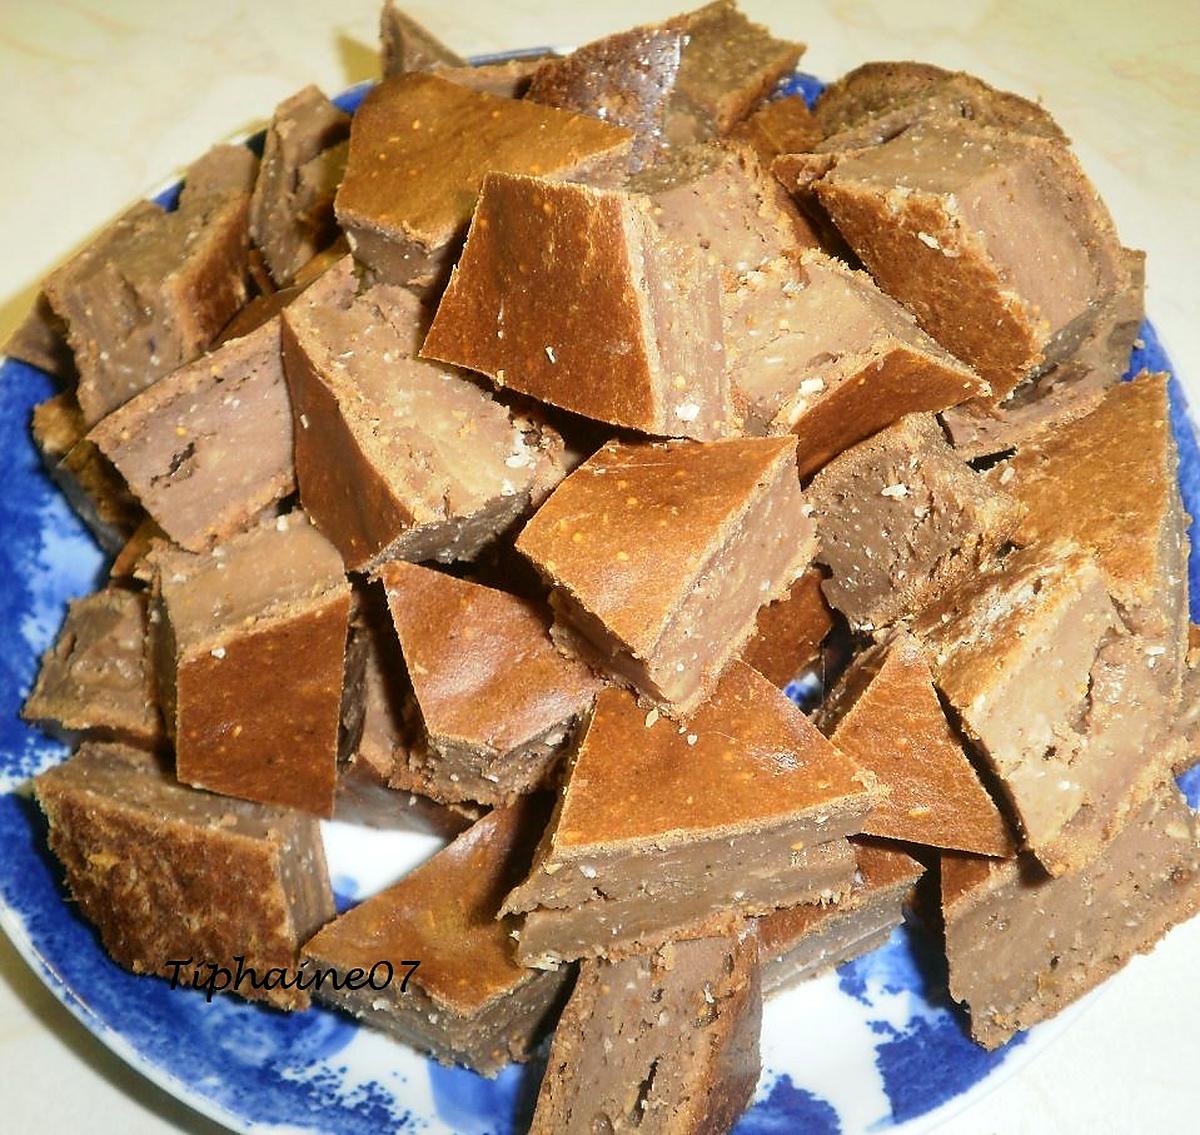 recette Bouchées cacao-coco-figue